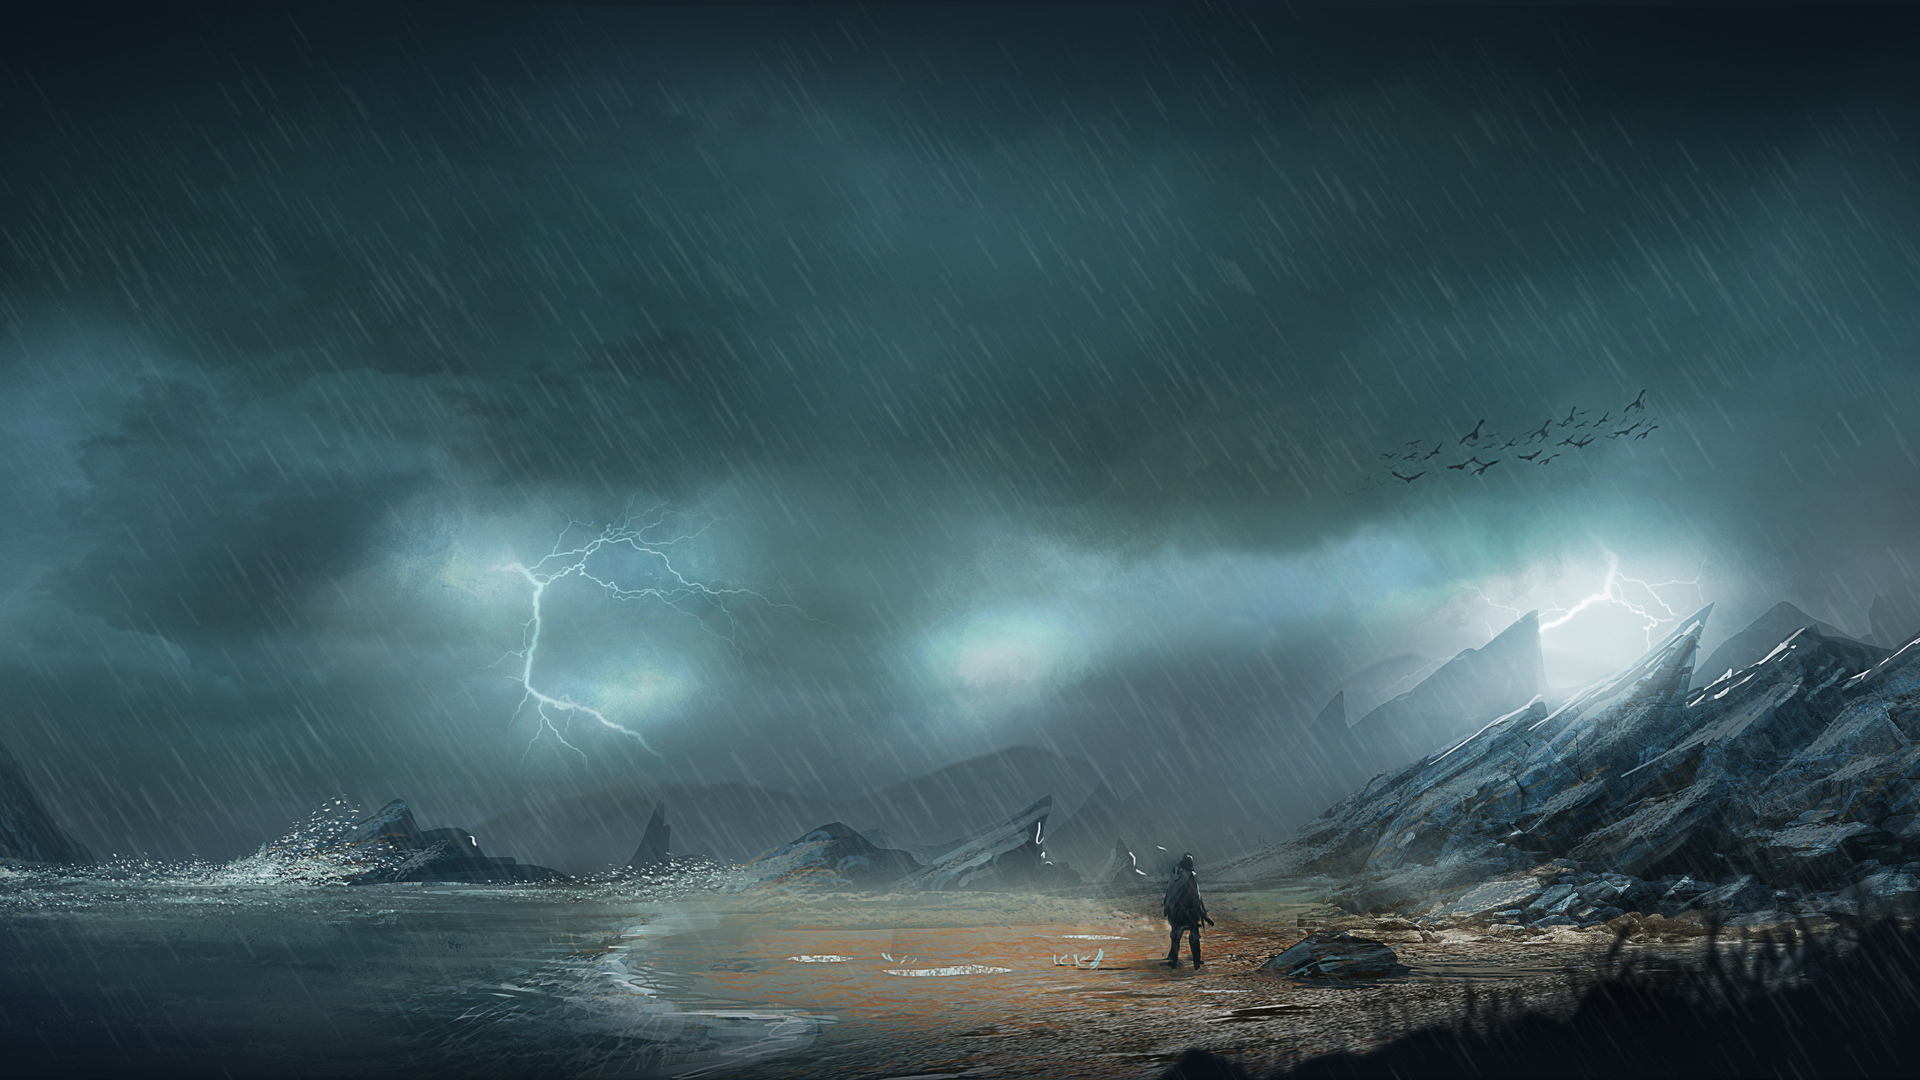 General 1920x1080 night rain rocks sea shore lightning men mist digital art storm